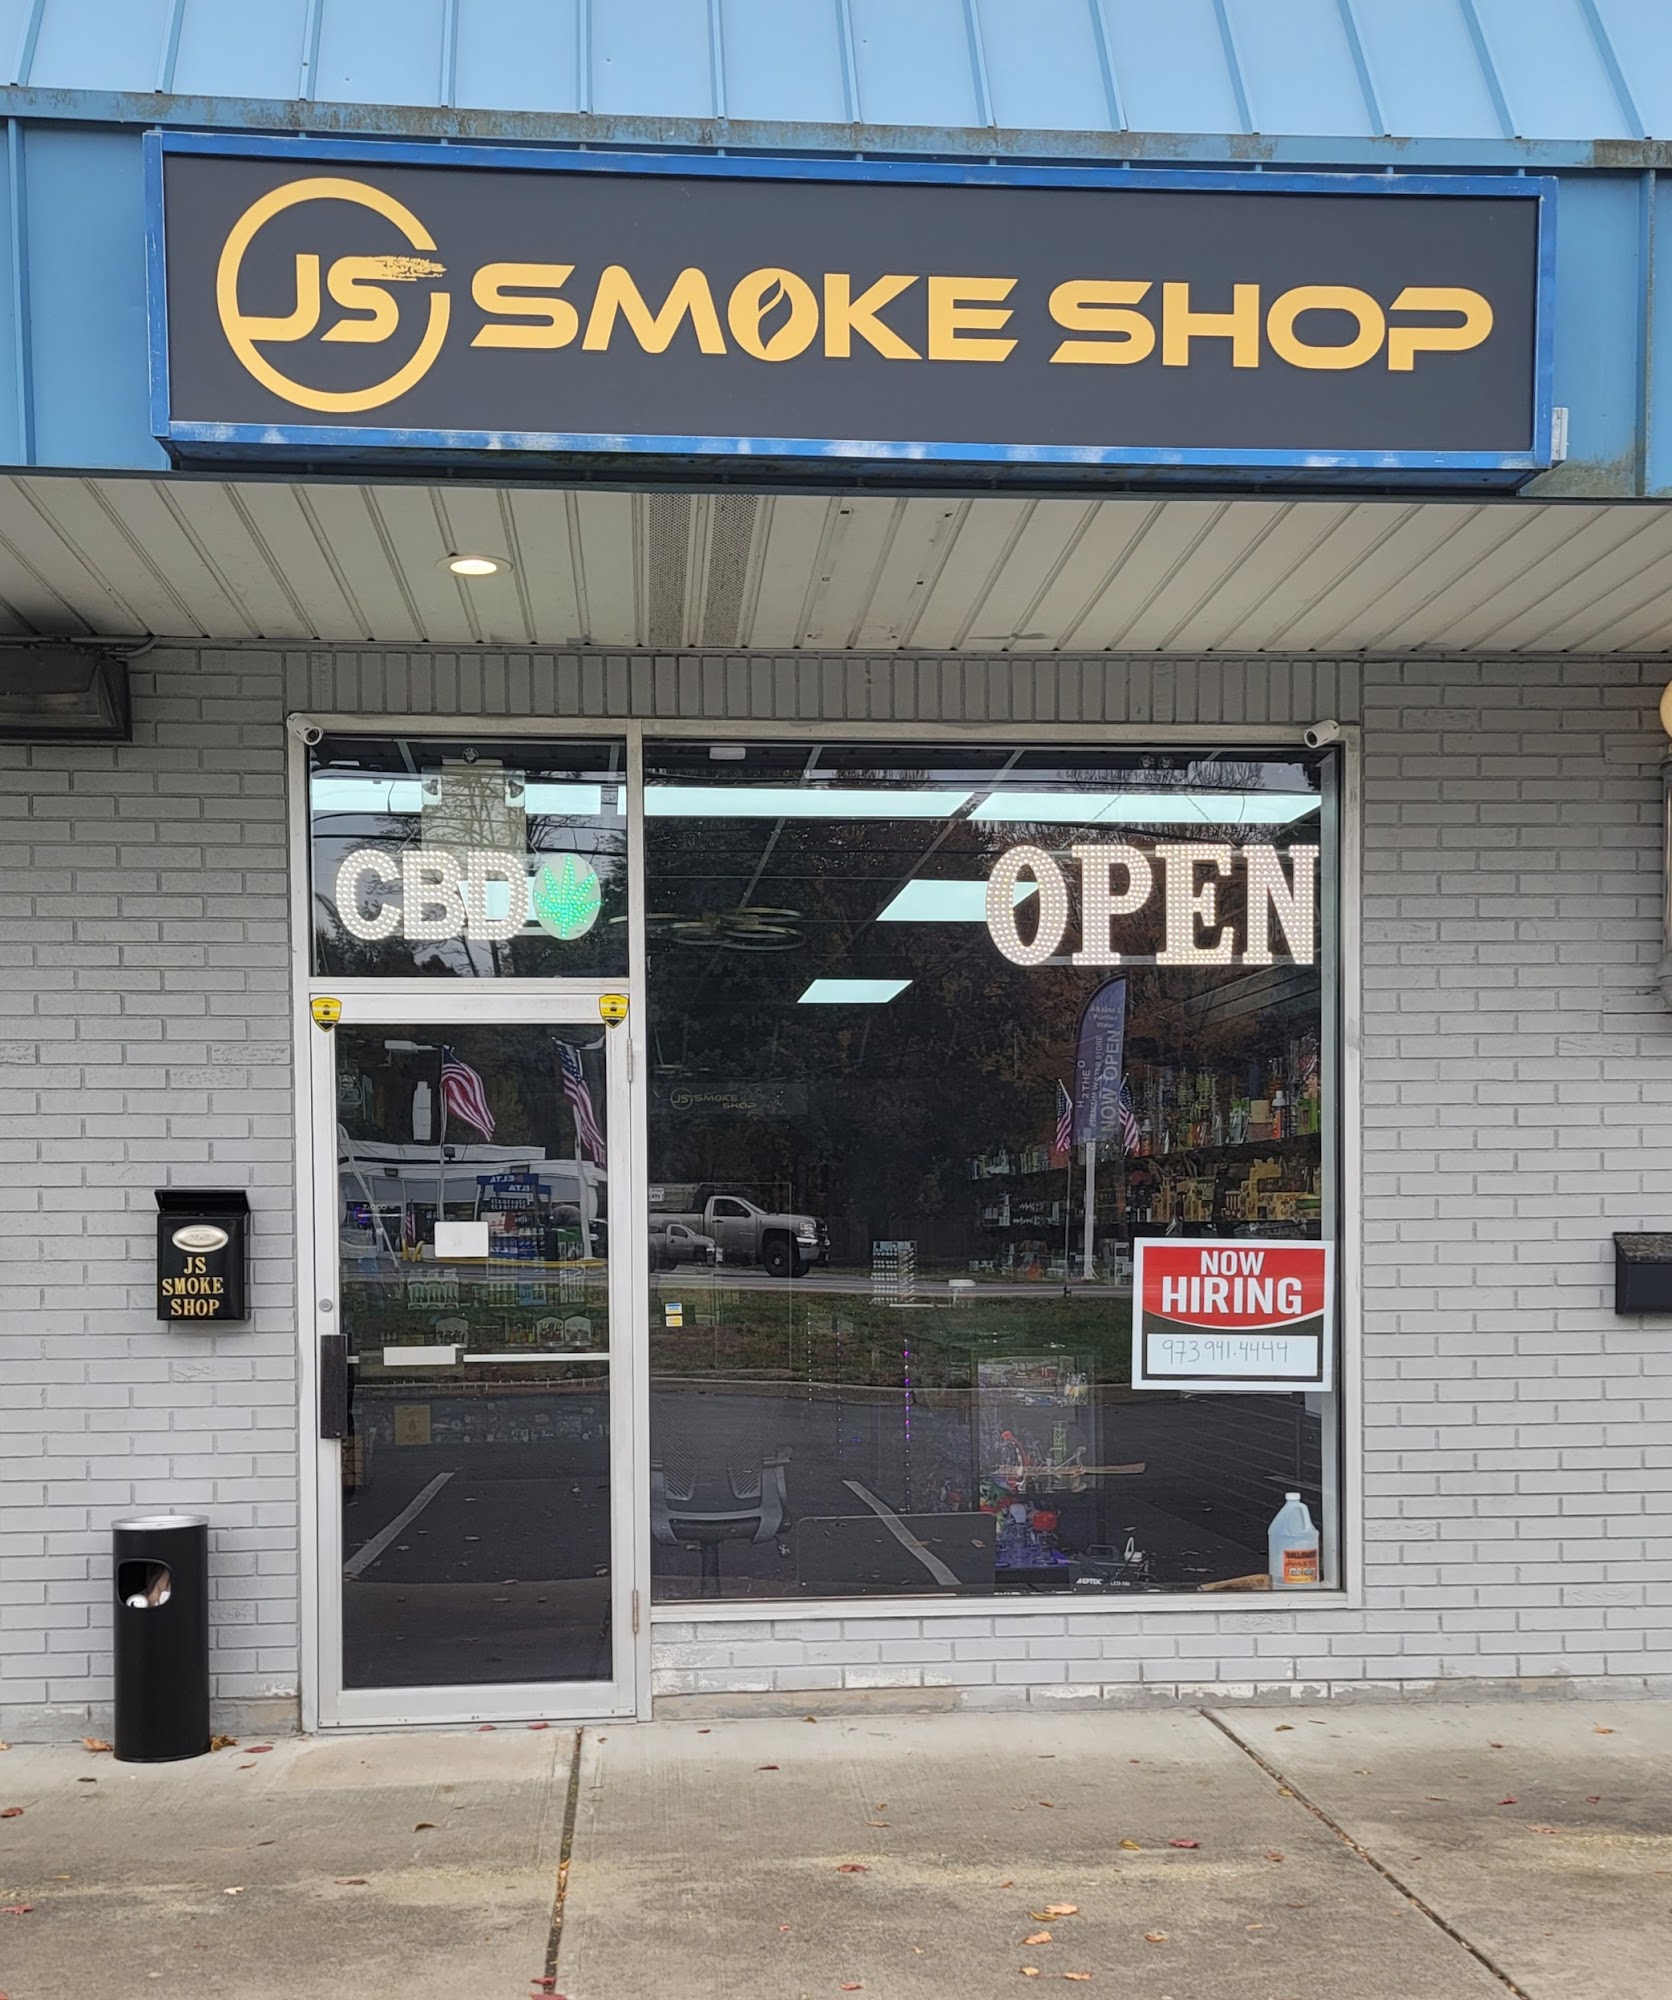 JS Smoke Shop